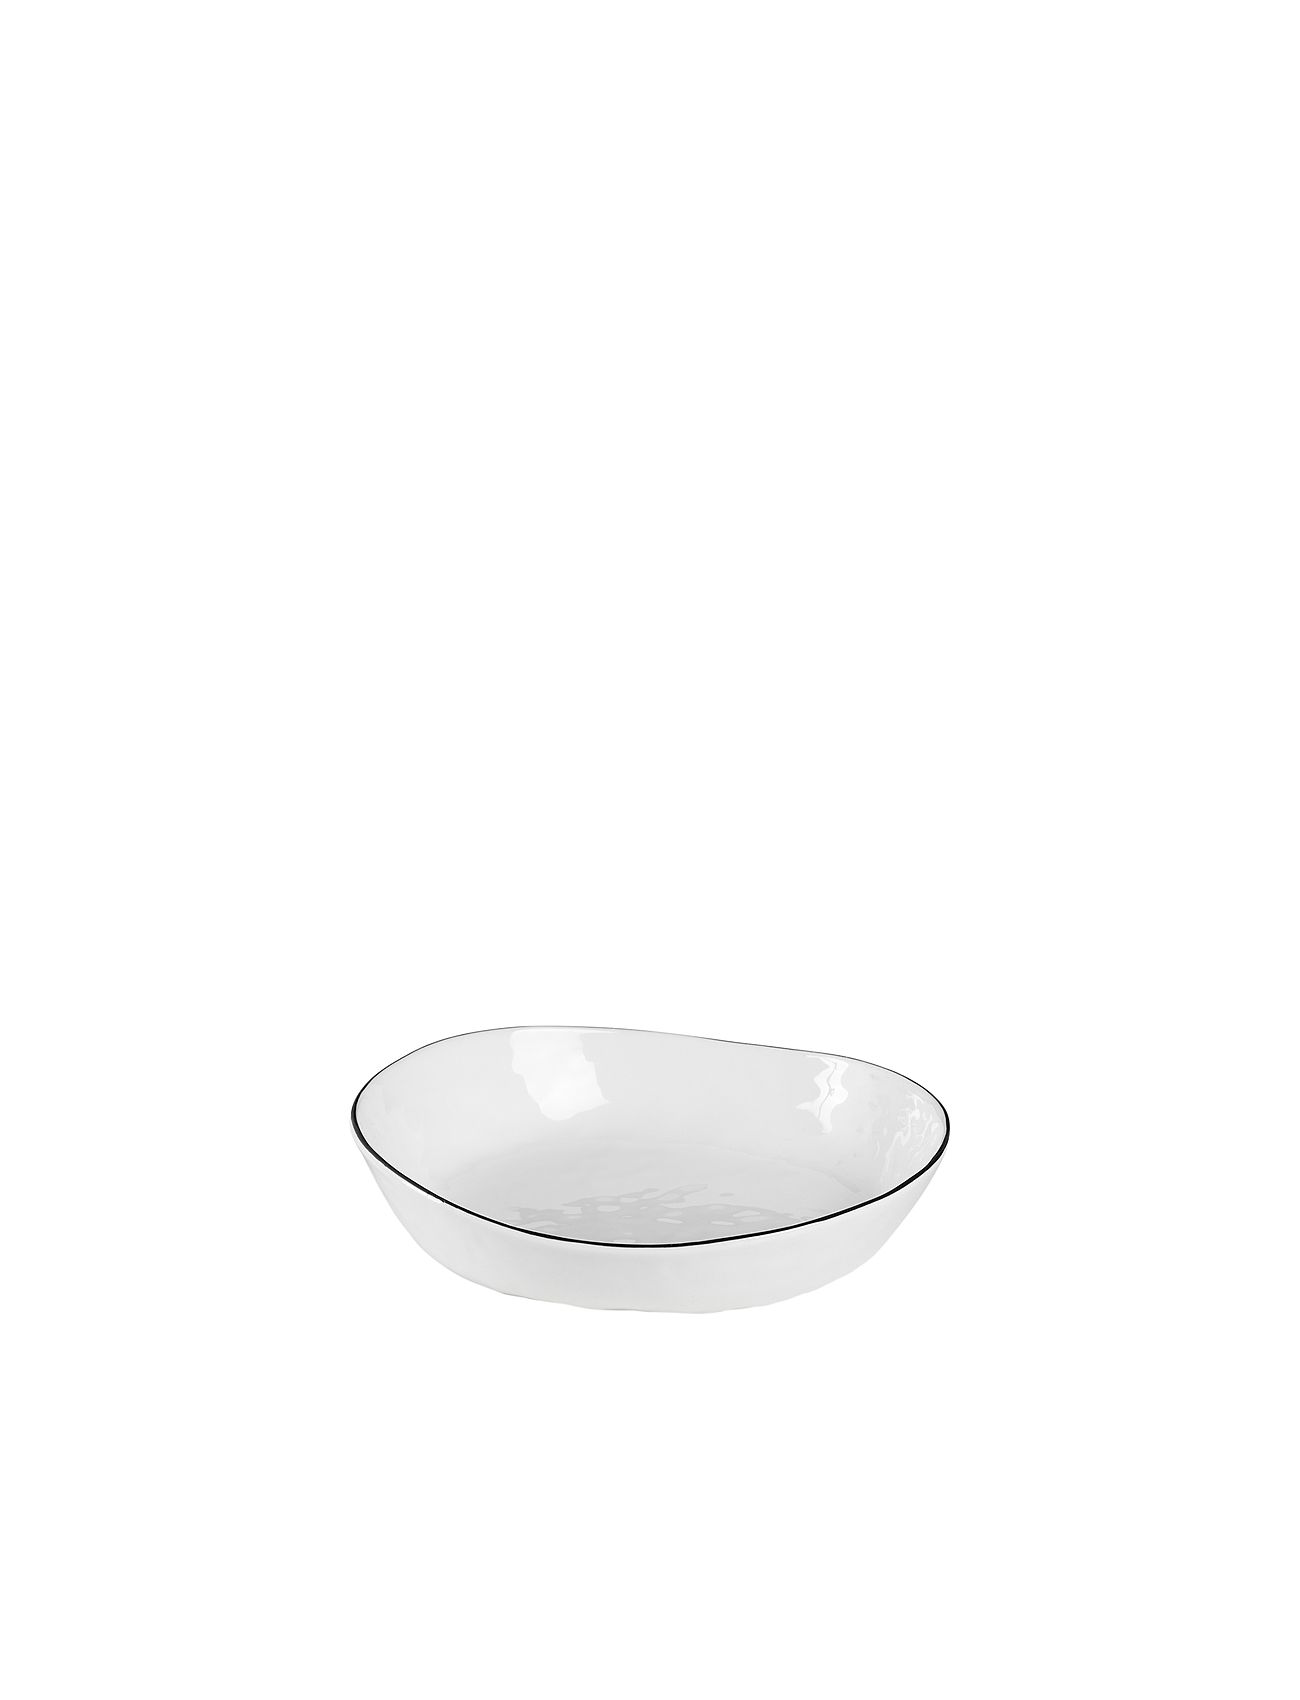 Skål 'Salt' Home Tableware Bowls & Serving Dishes Salad Bowls White Broste Copenhagen